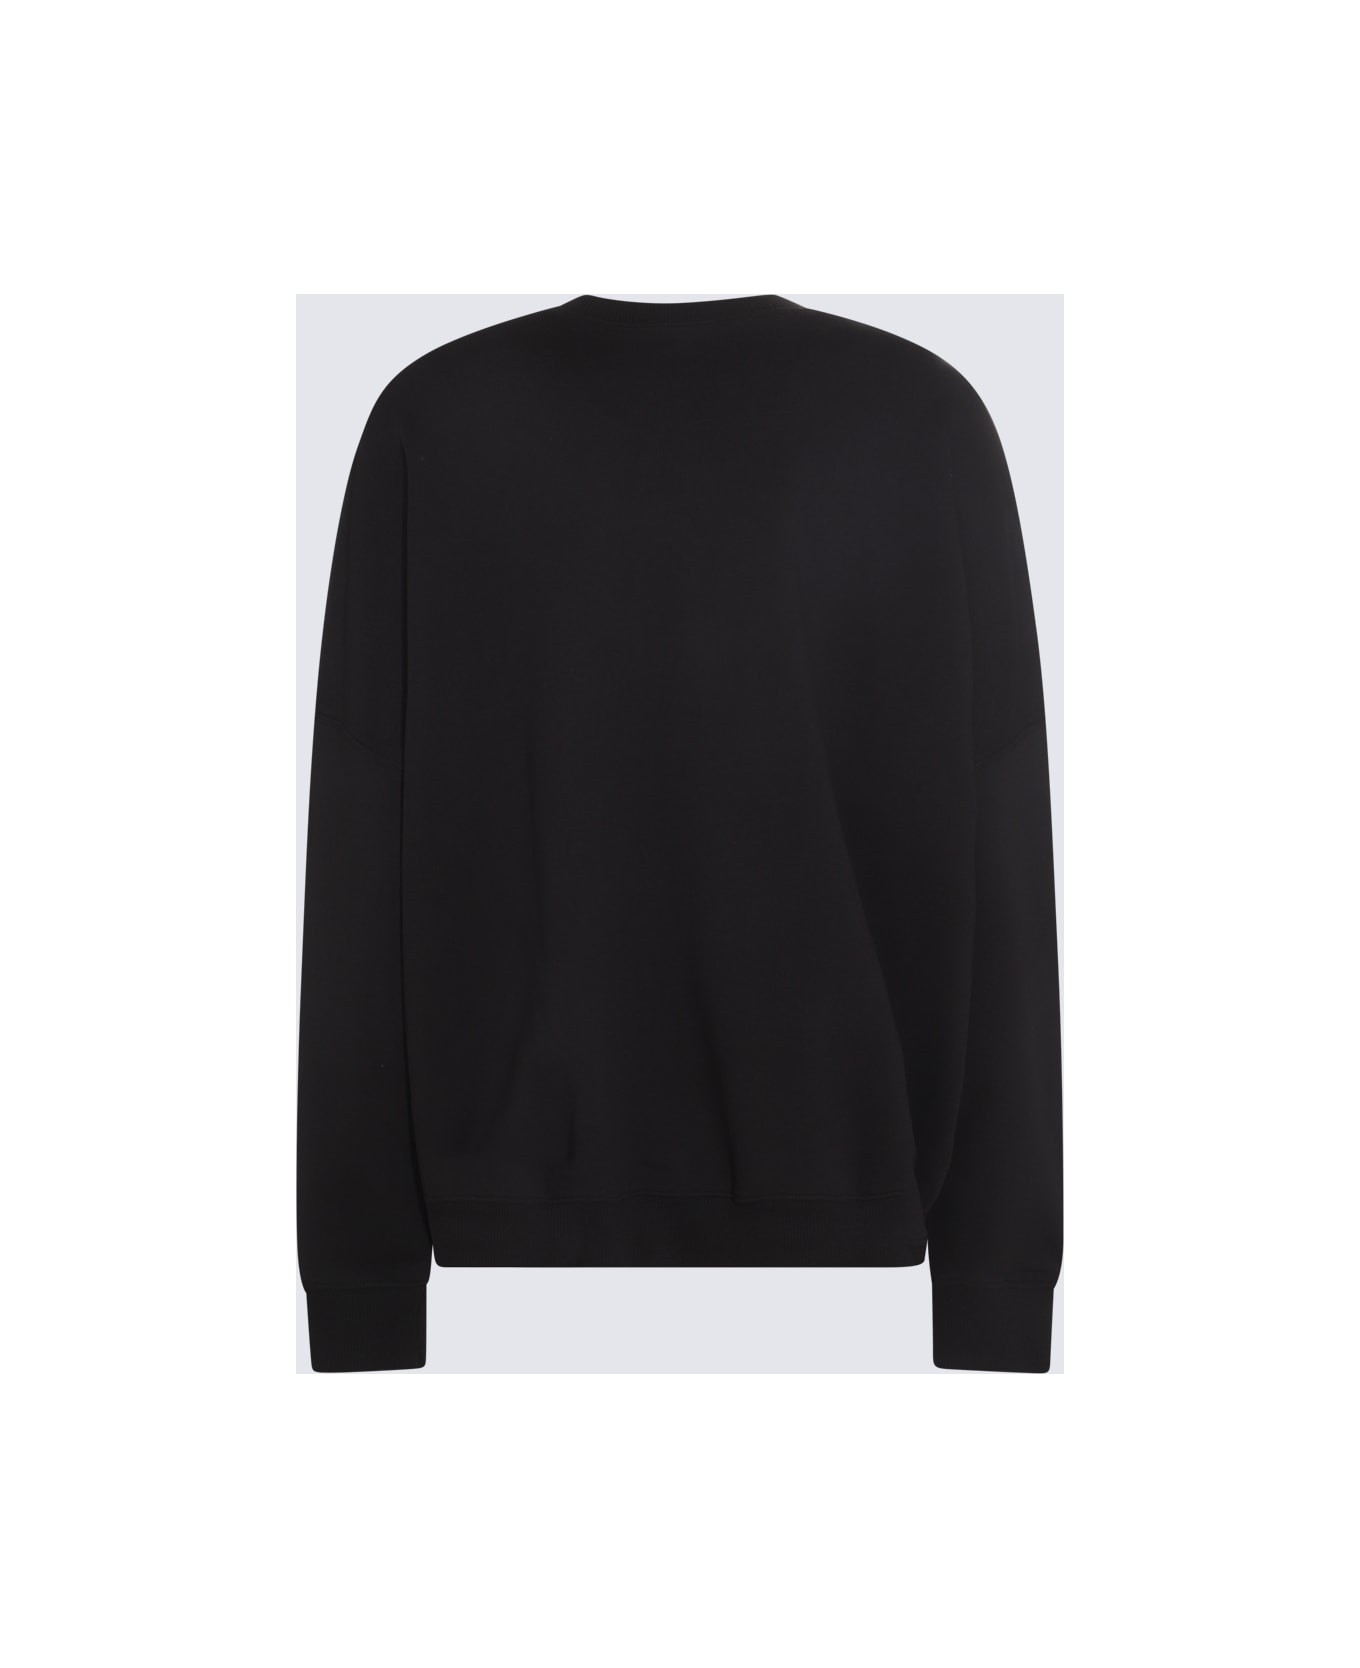 Versace Jeans Couture Black Cotton Sweatshirt - Black